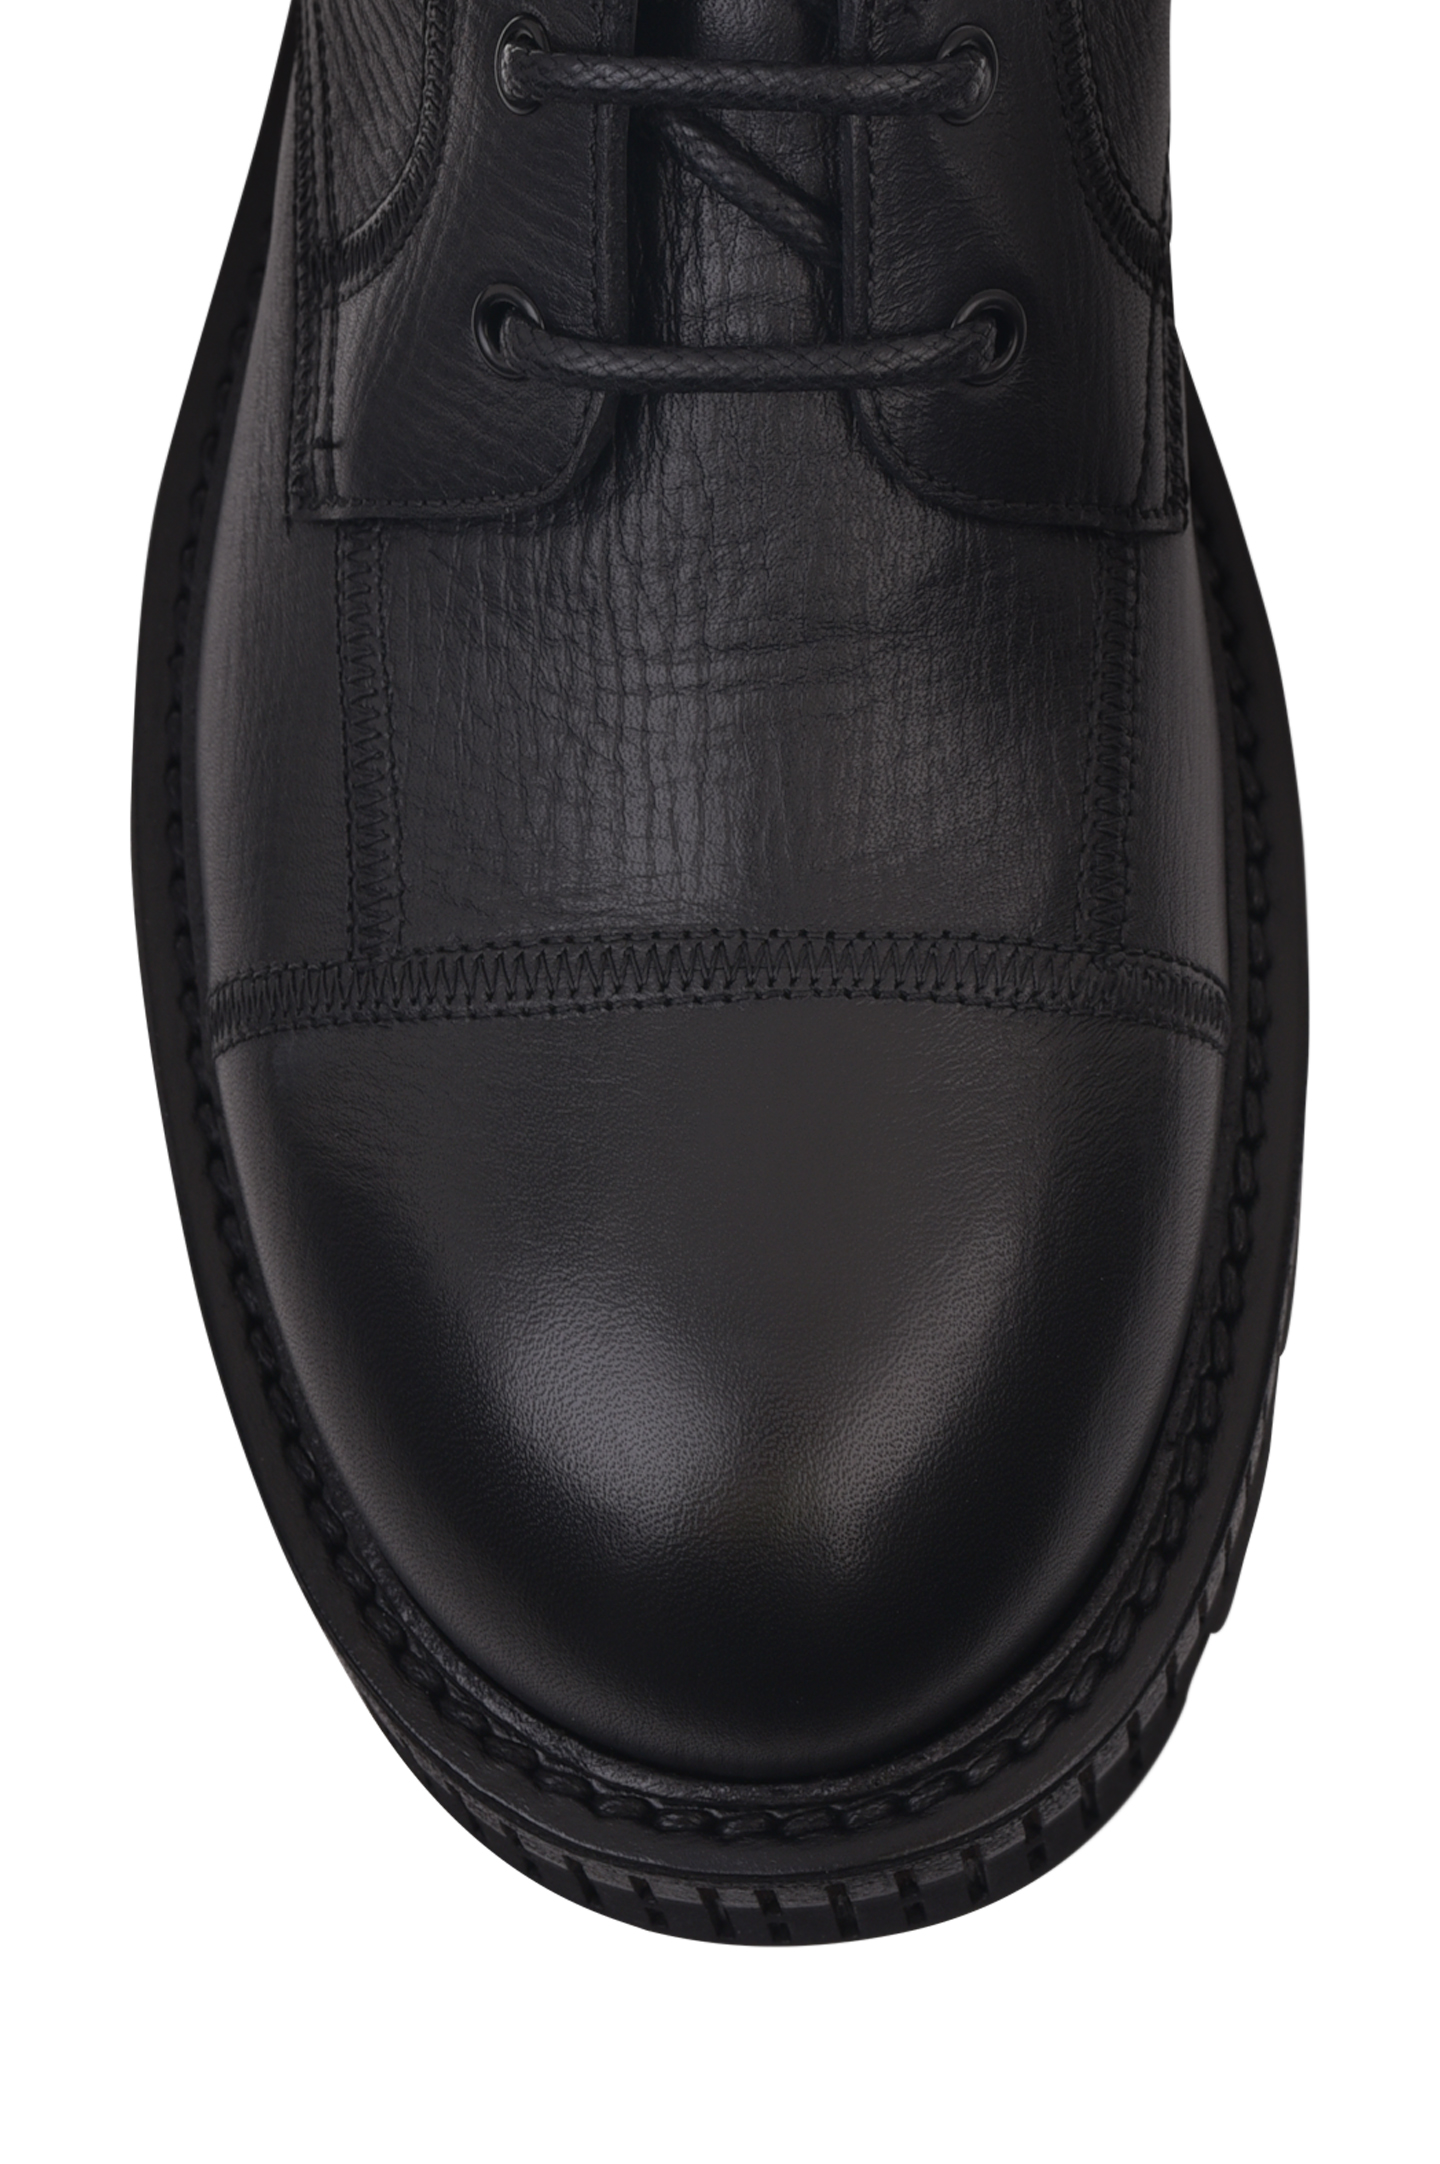 Ботинки DOLCE & GABBANA A60380 AO953, цвет: Черный, Мужской